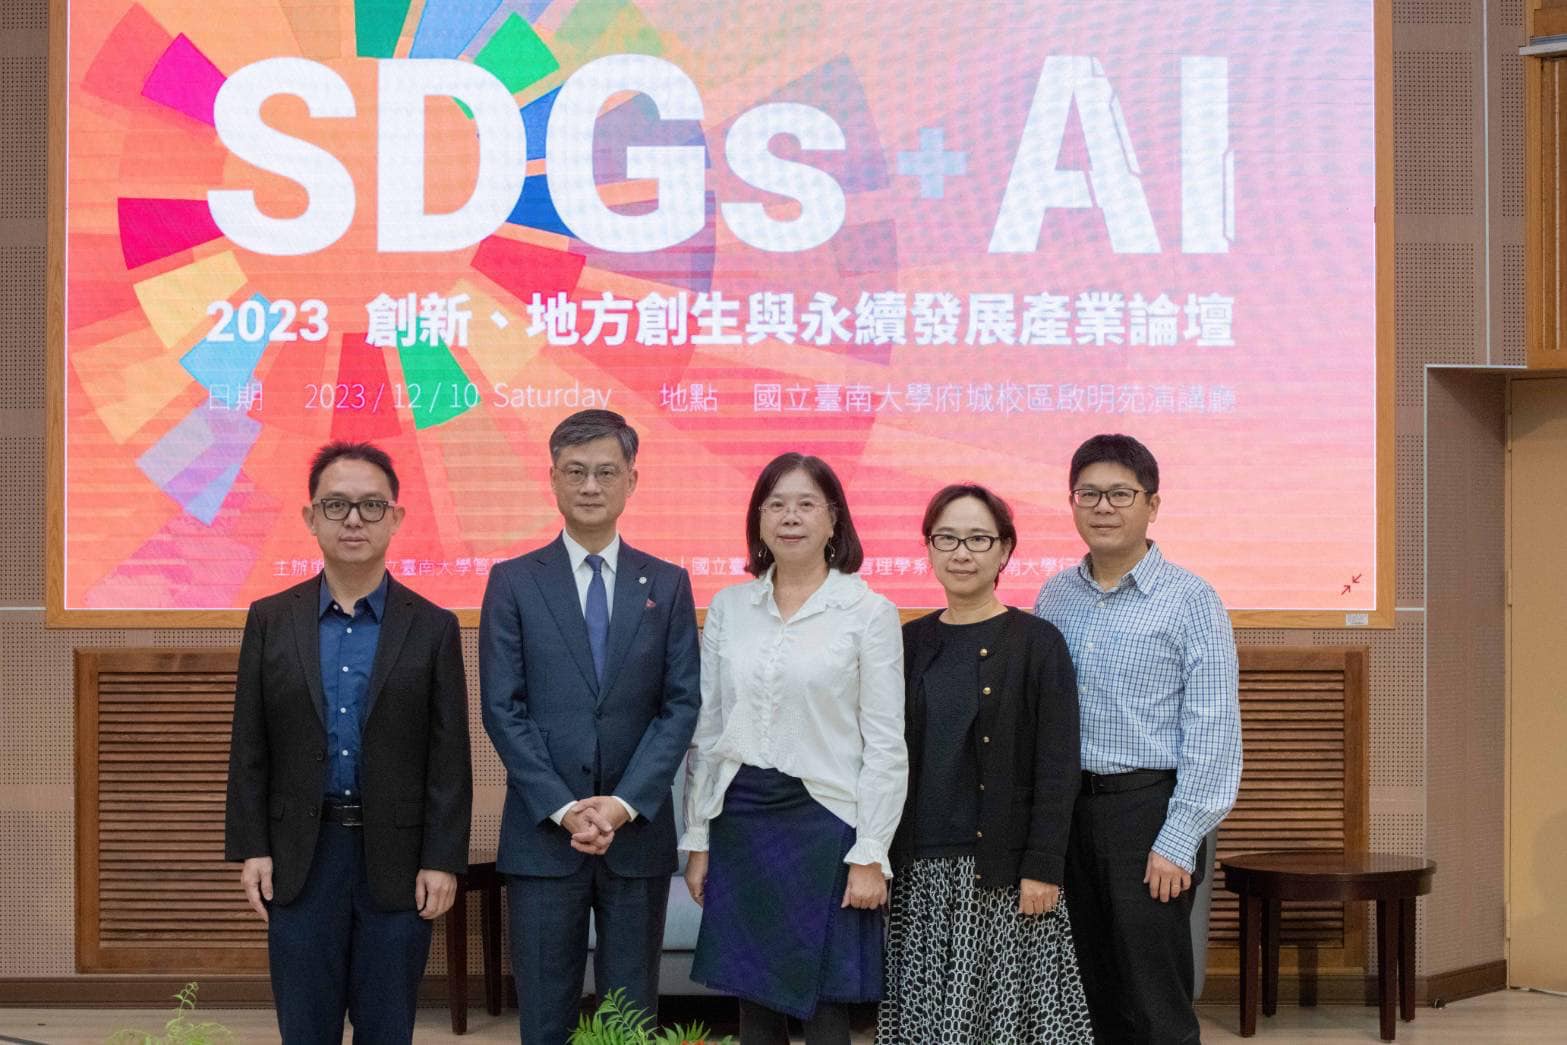 112年SDGs+AI 創新、地方創生與永續發展產業論壇